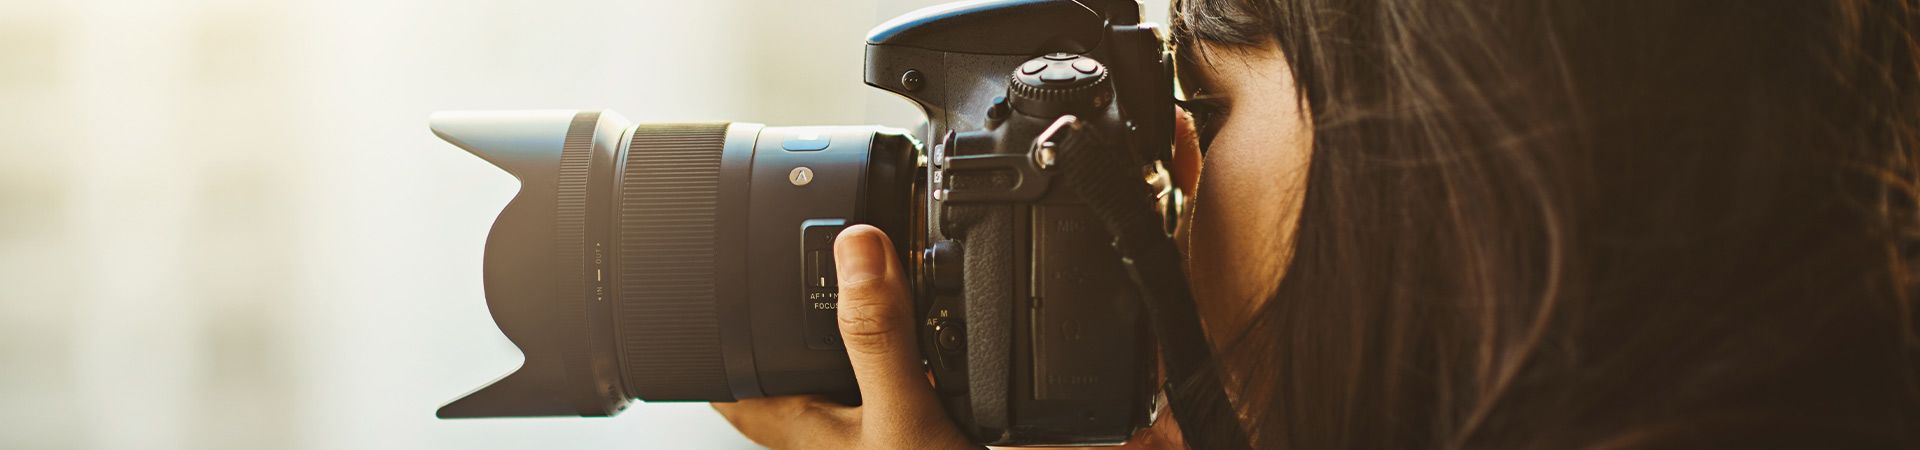 Macchina fotografica professionale per principianti: donna si esercita con la sua prima fotocamera.